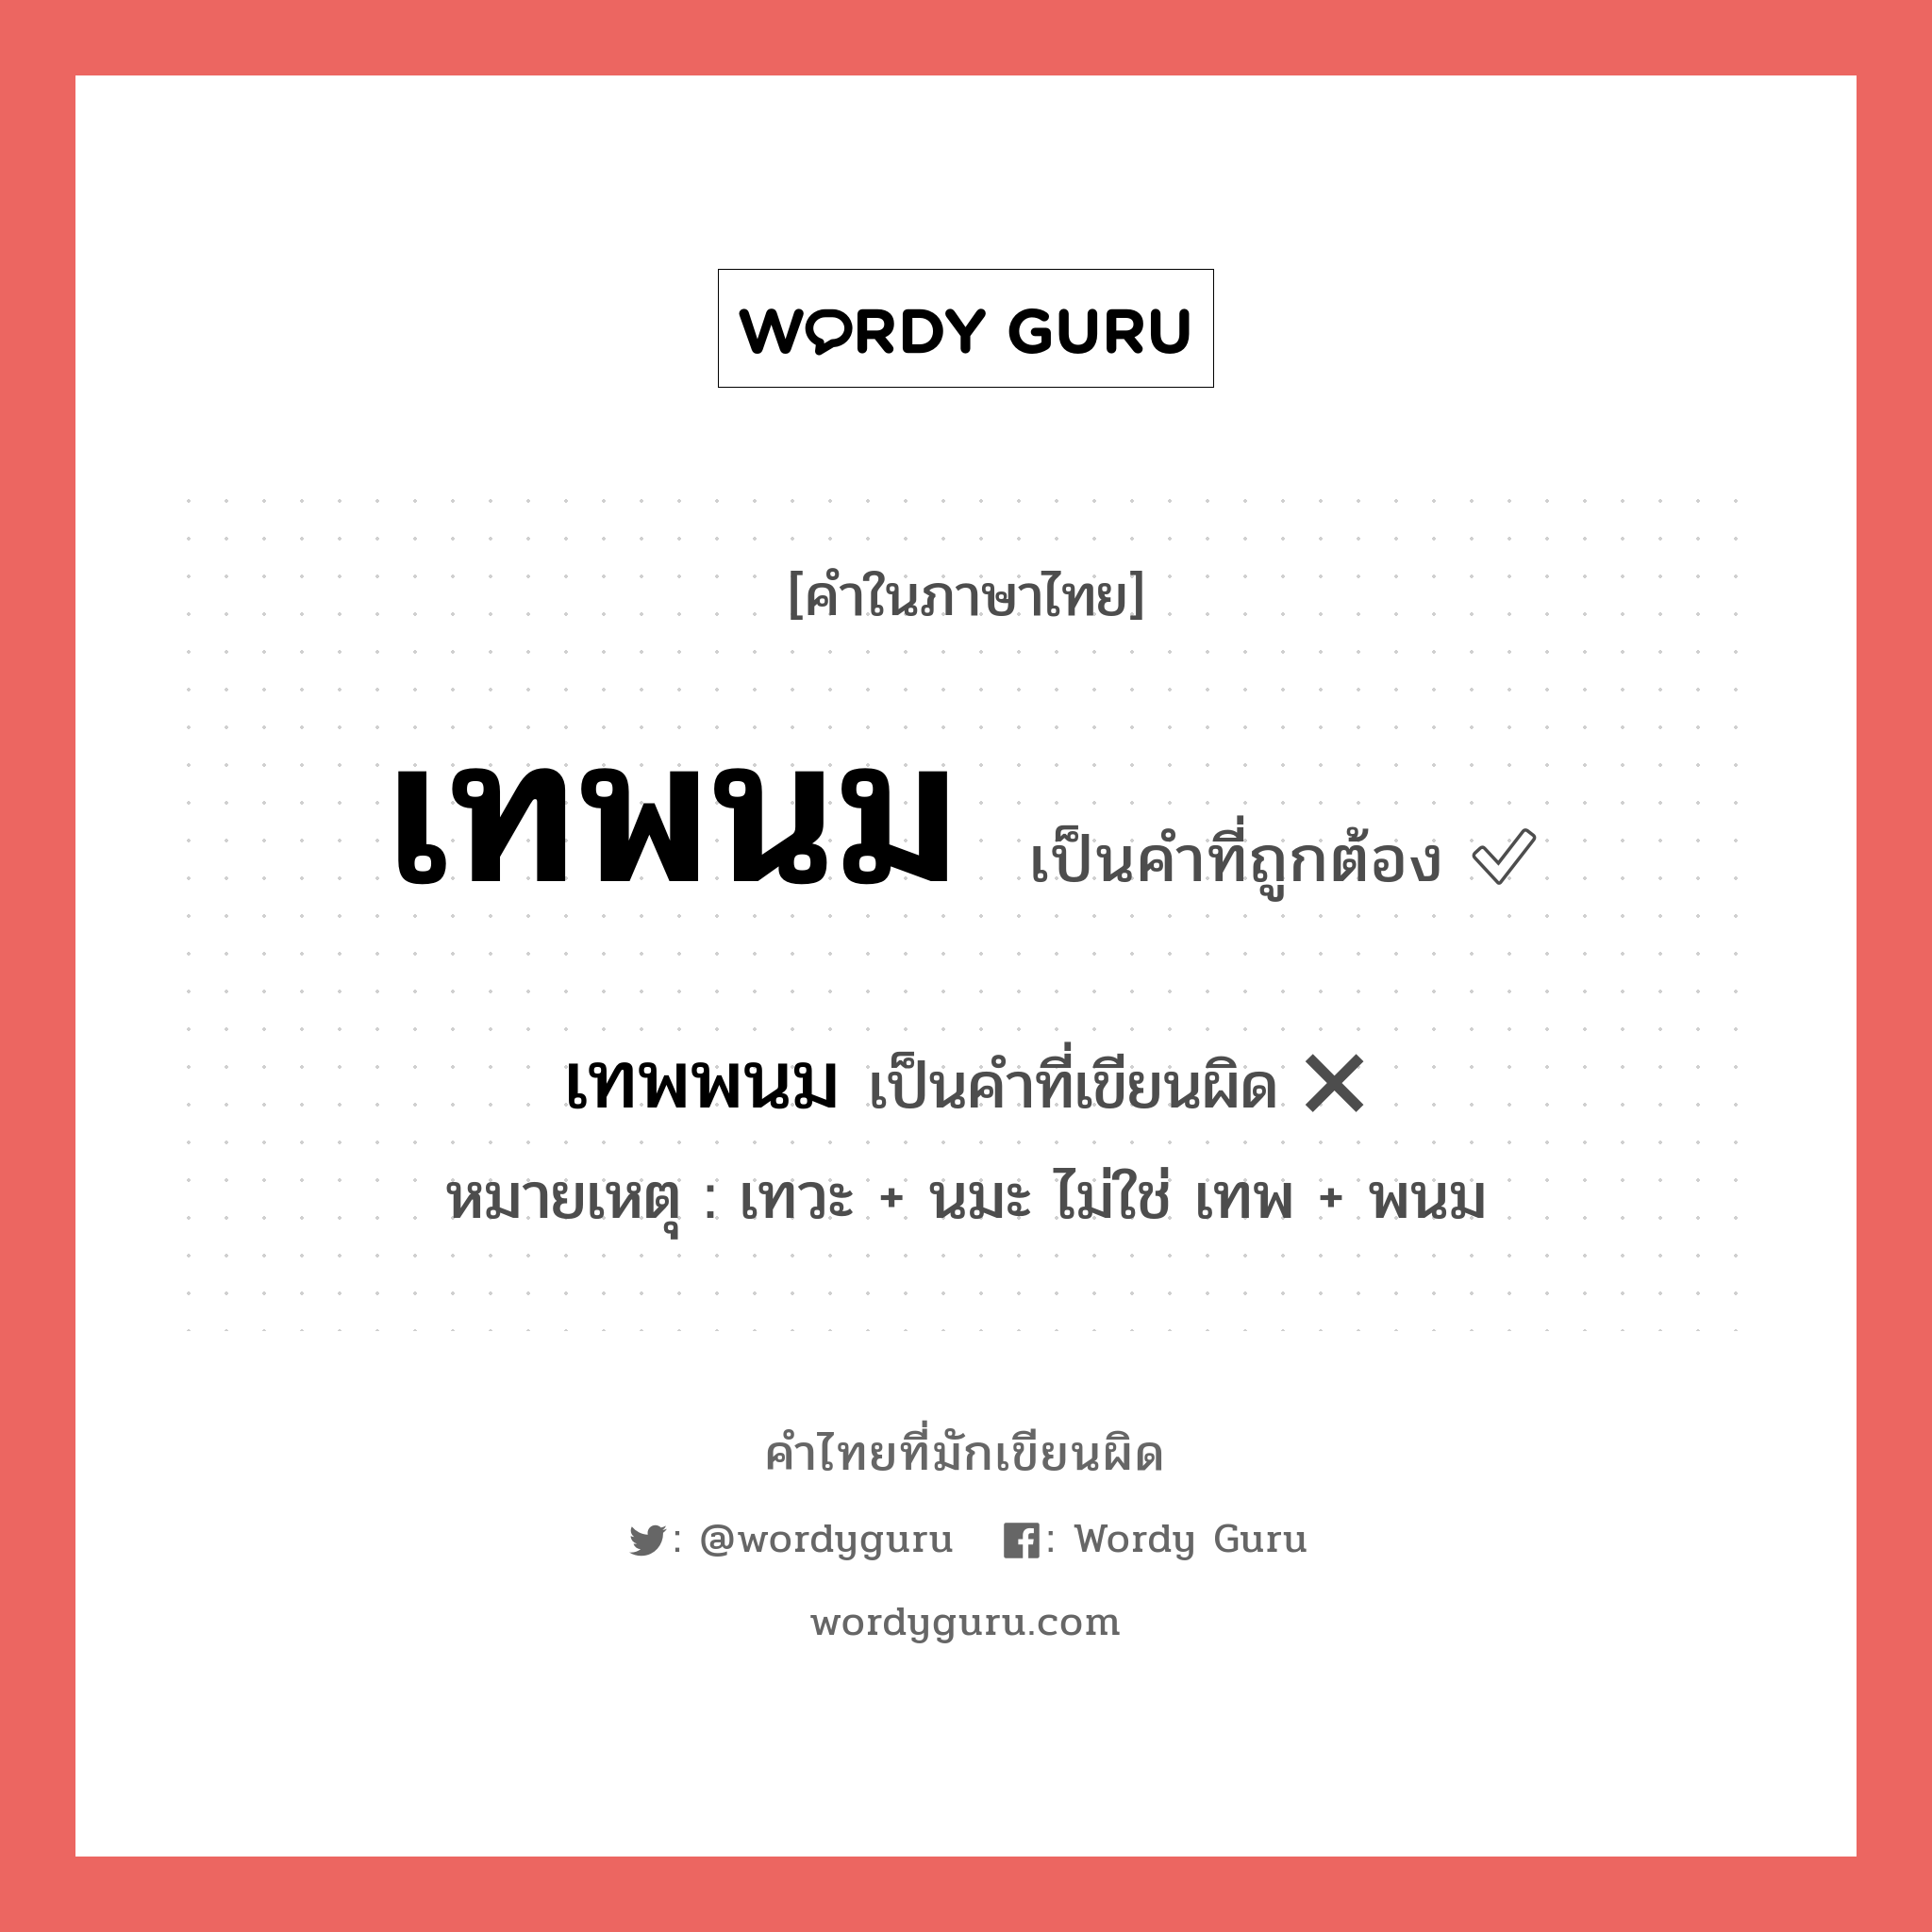 เทพนม หรือ เทพพนม คำไหนเขียนถูก?, คำในภาษาไทยที่มักเขียนผิด เทพนม คำที่ผิด ❌ เทพพนม หมายเหตุ เทวะ + นมะ ไม่ใช่ เทพ + พนม